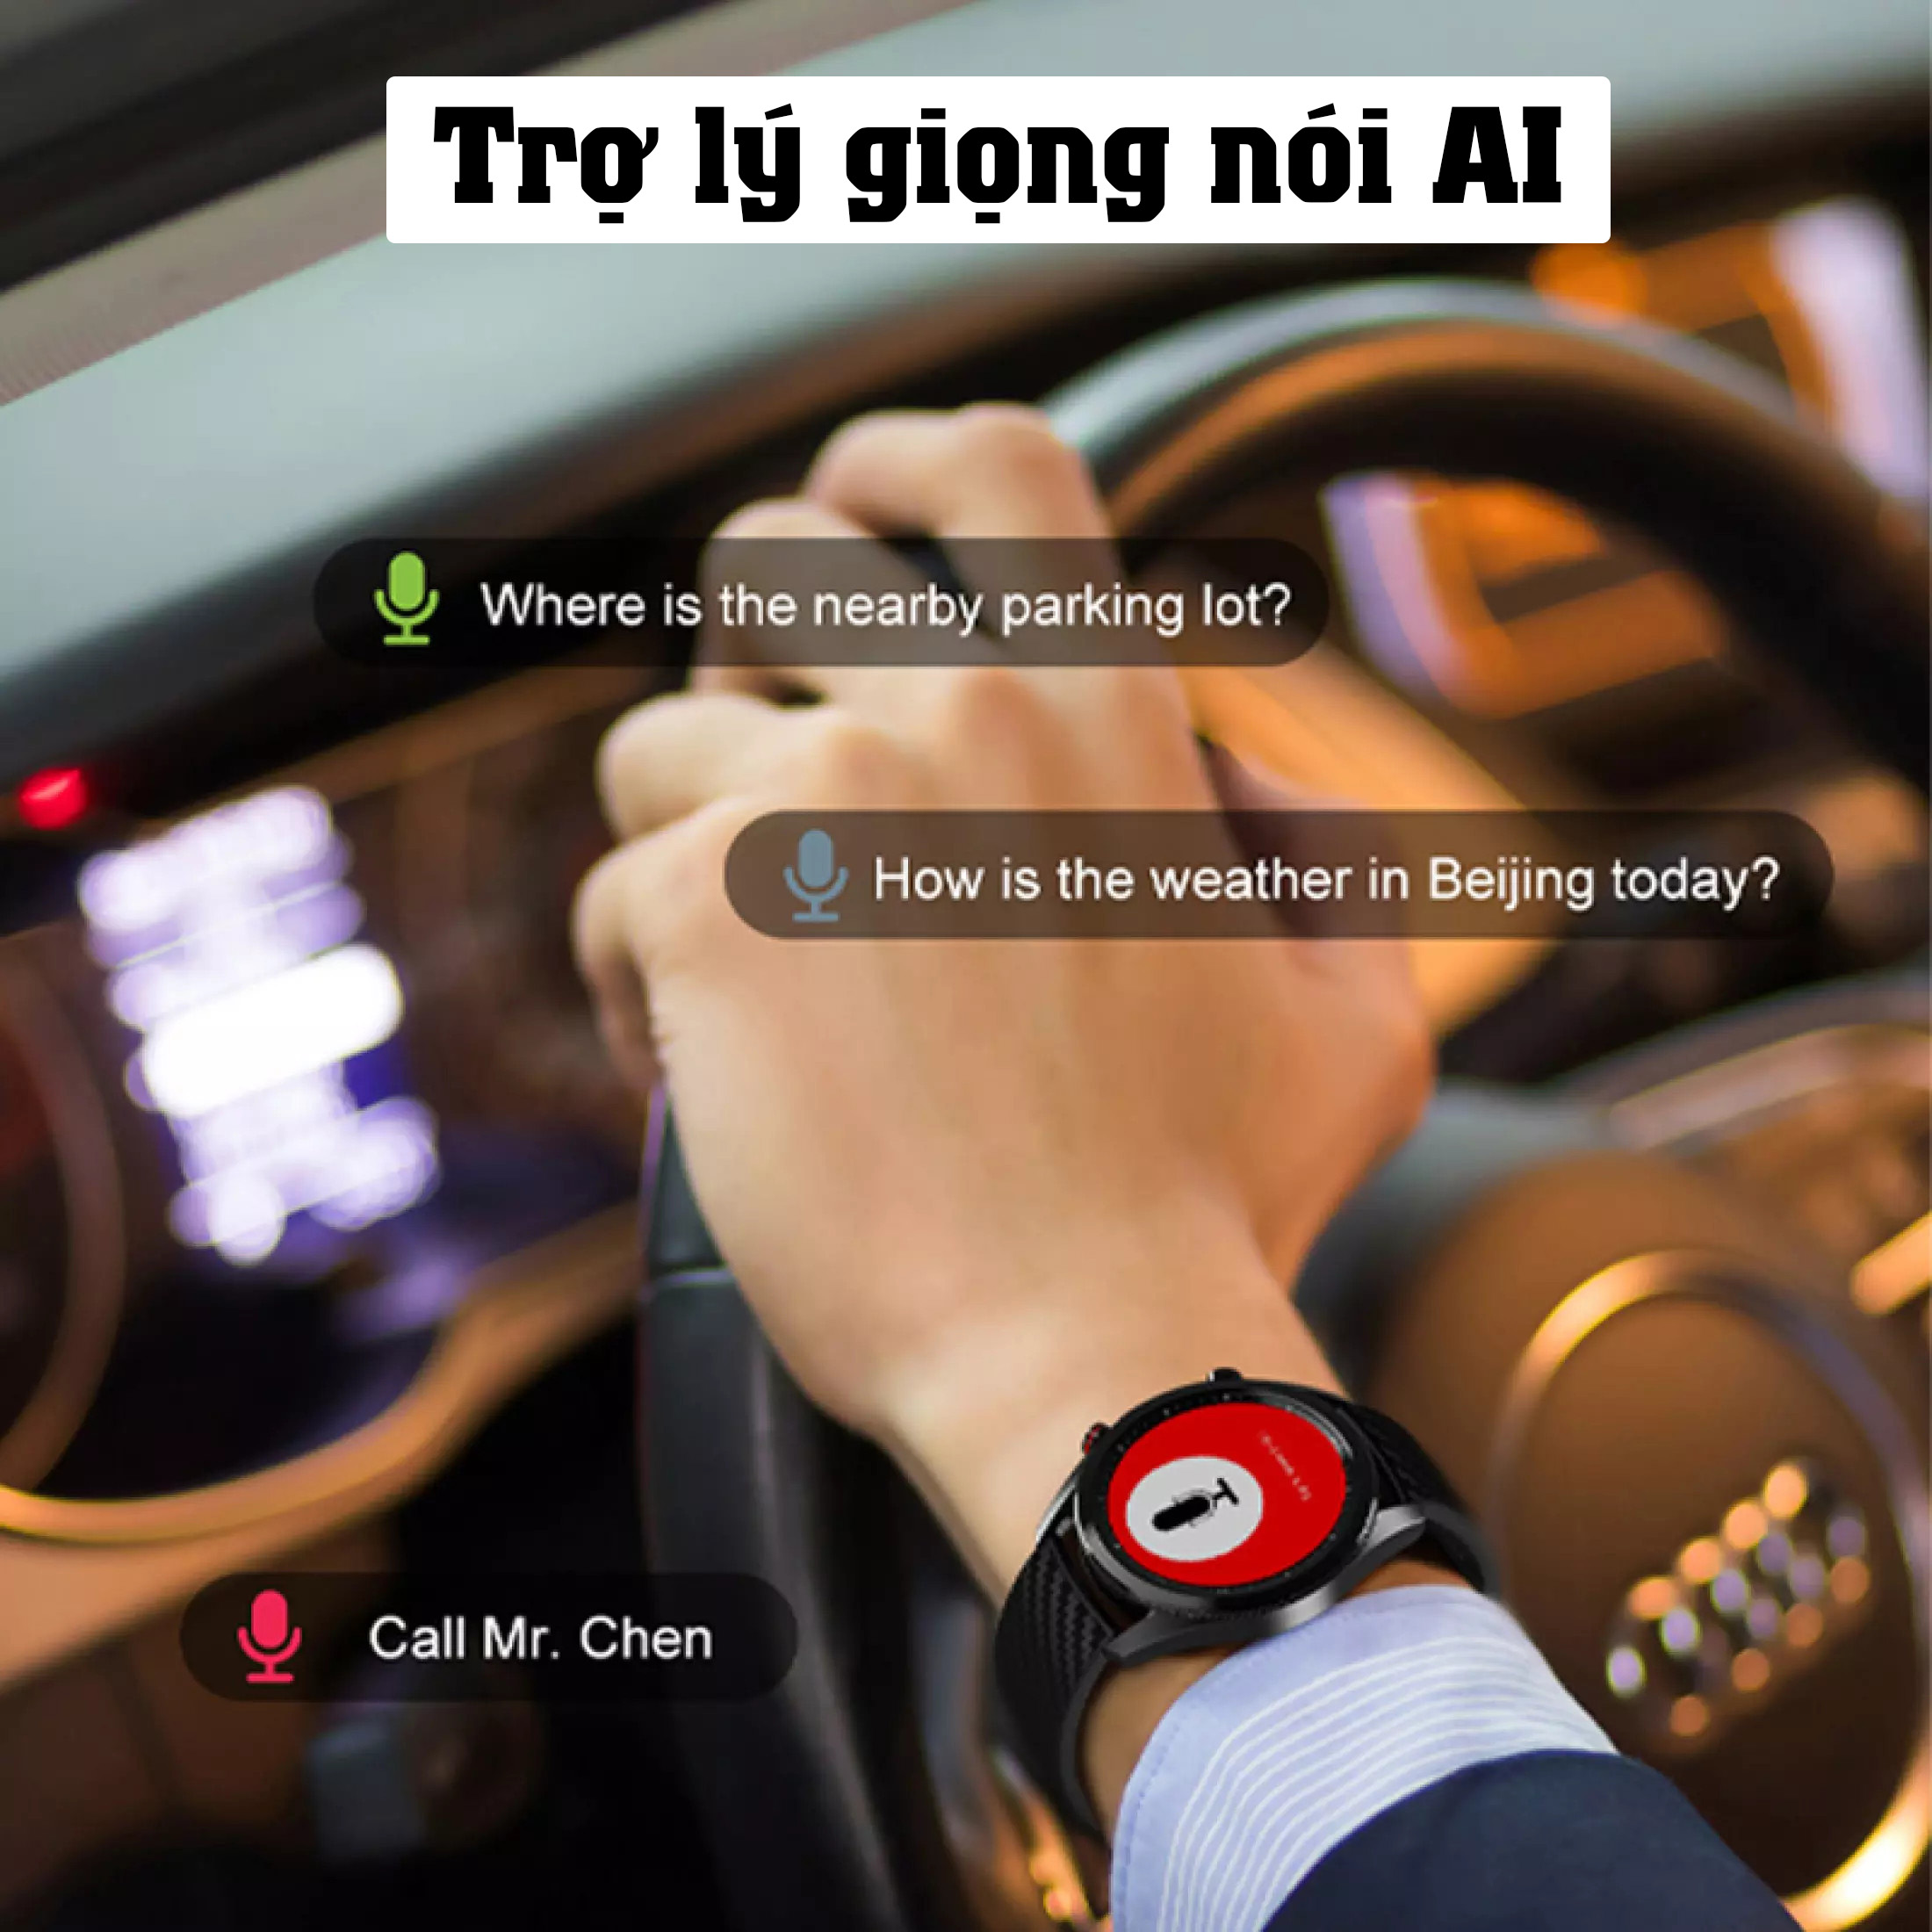 Đồng hồ thông minh DT91 nghe gọi giá rẻ , Thay đổi hình nền cá nhân tùy ý , nhận thông báo app , ngôn ngữ Tiếng Việt + Anh